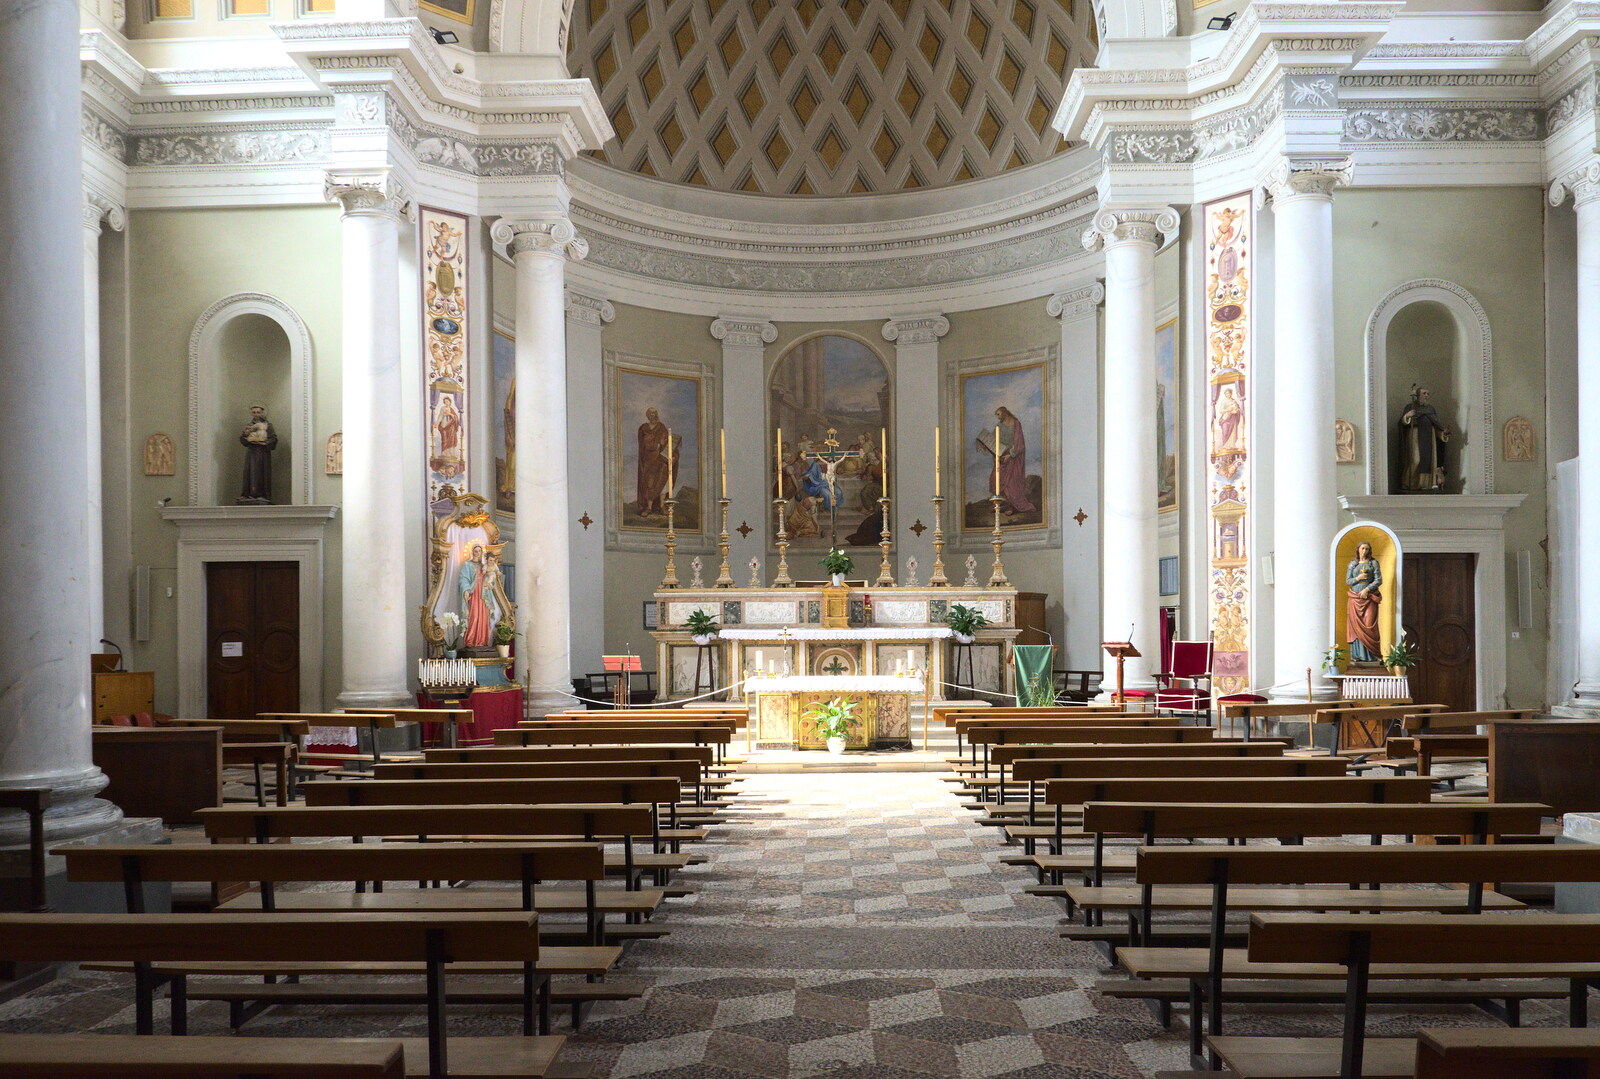 Castiglio Del Lago and Santuario della Verna, Umbria and Tuscany, Italy - 1st September 2022: The impressive Santa Maria Maddalena church